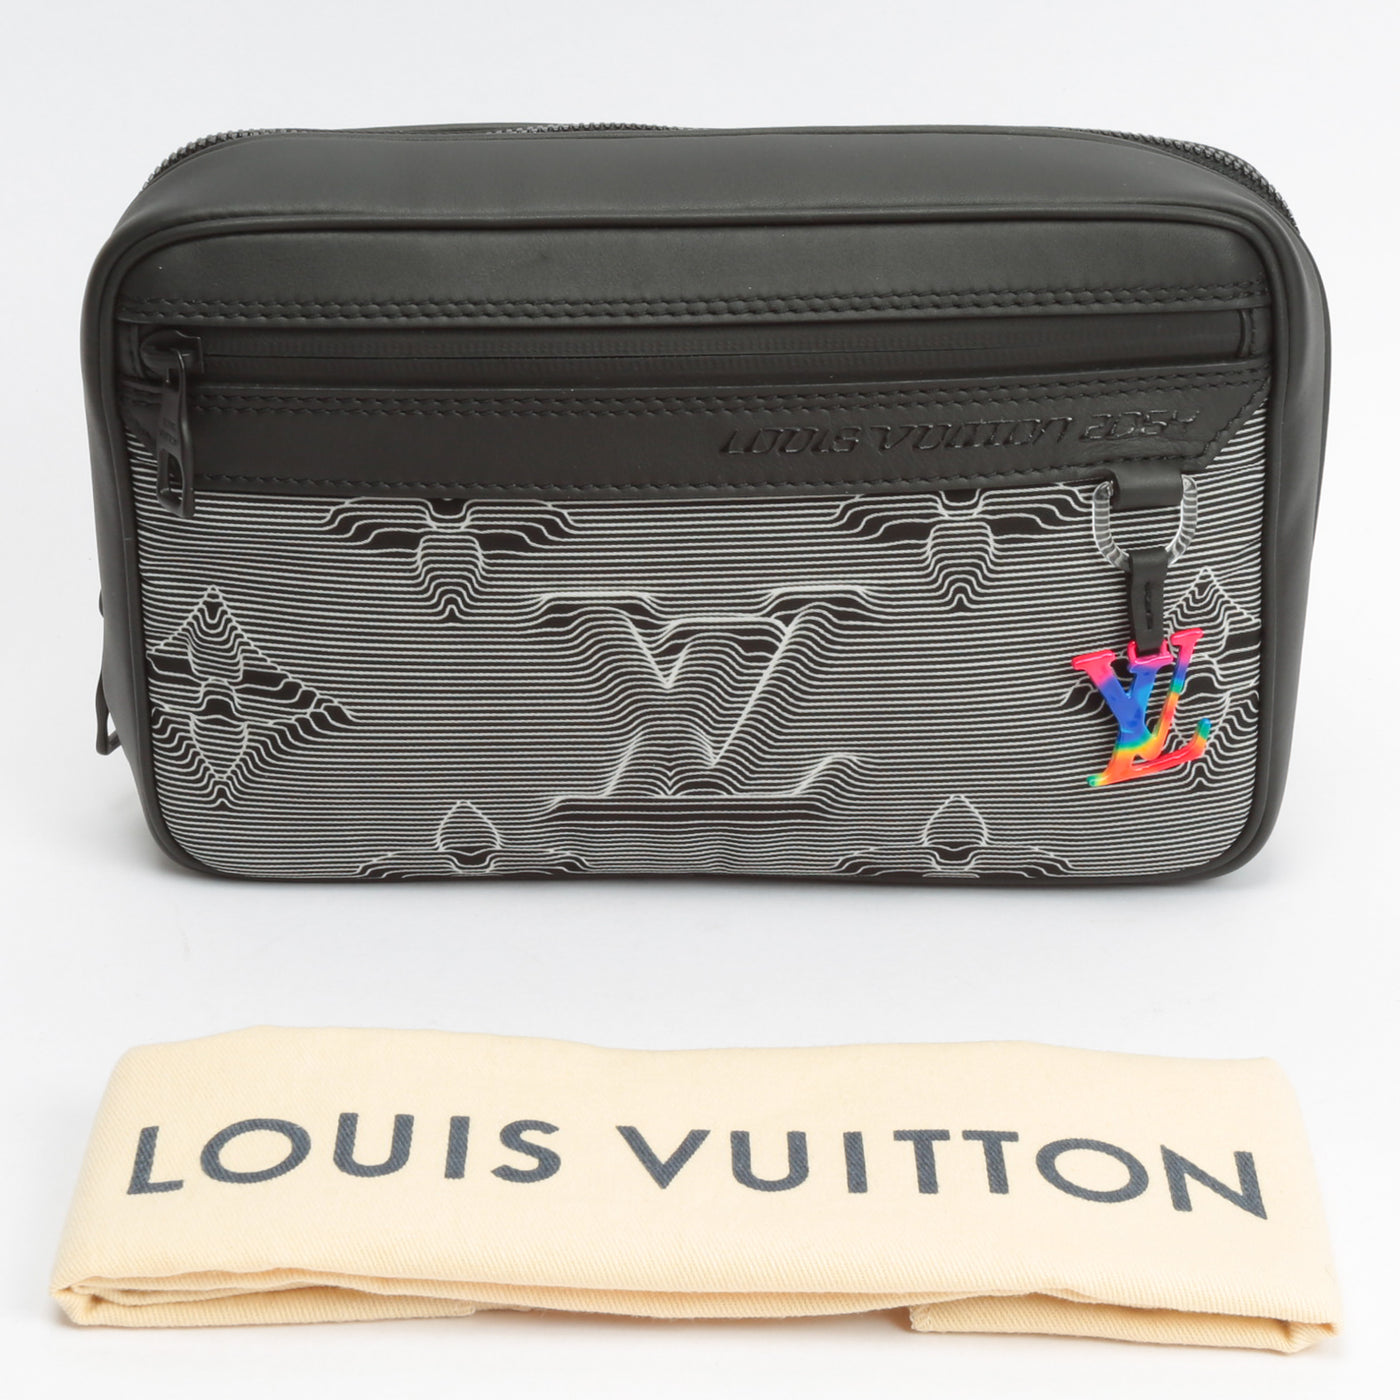 Louis Vuitton Expandable Monogram 2054 Messenger Bag - Black